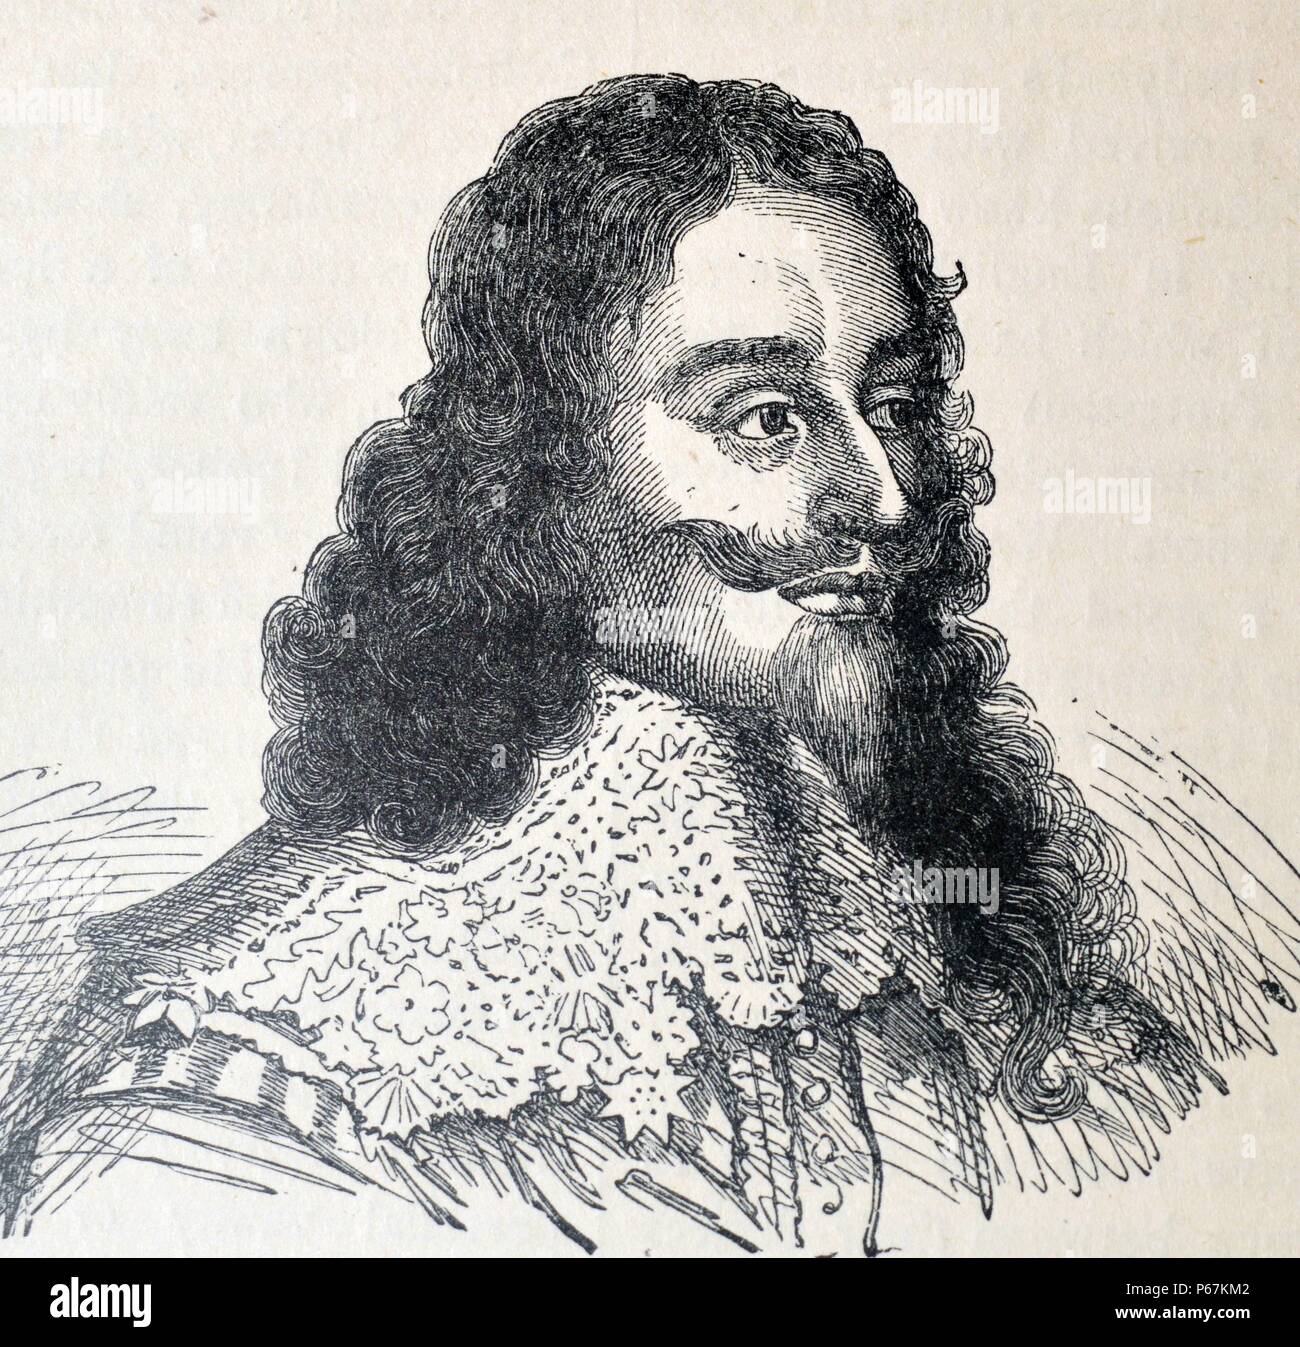 Incisione di Carlo I d'Inghilterra (1600-1649) monarca dei tre regni di Inghilterra, in Scozia e in Irlanda dal 27 marzo 1625 fino alla sua esecuzione in 1649. Risalenti al XVII secolo Foto Stock